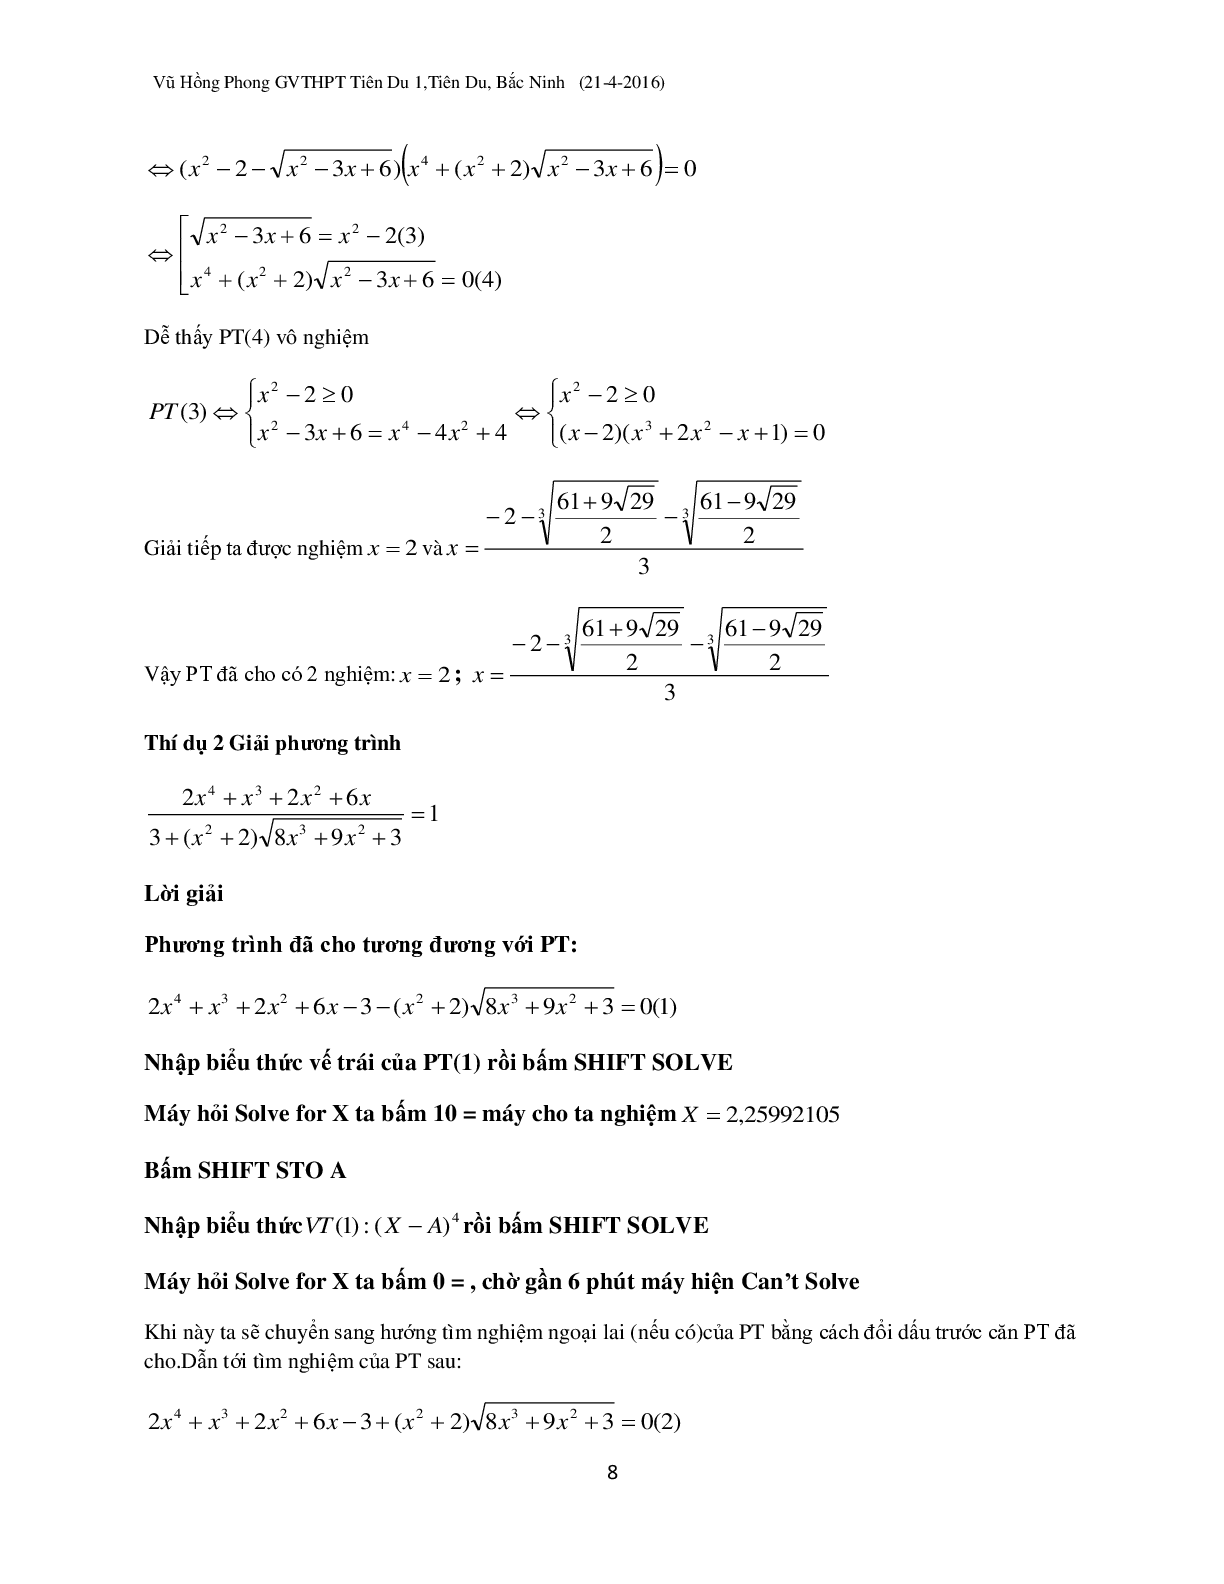 Kỹ thuật ‘đánh cả cụm’ khi dùng Casio giải phương trình vô tỉ (trang 8)